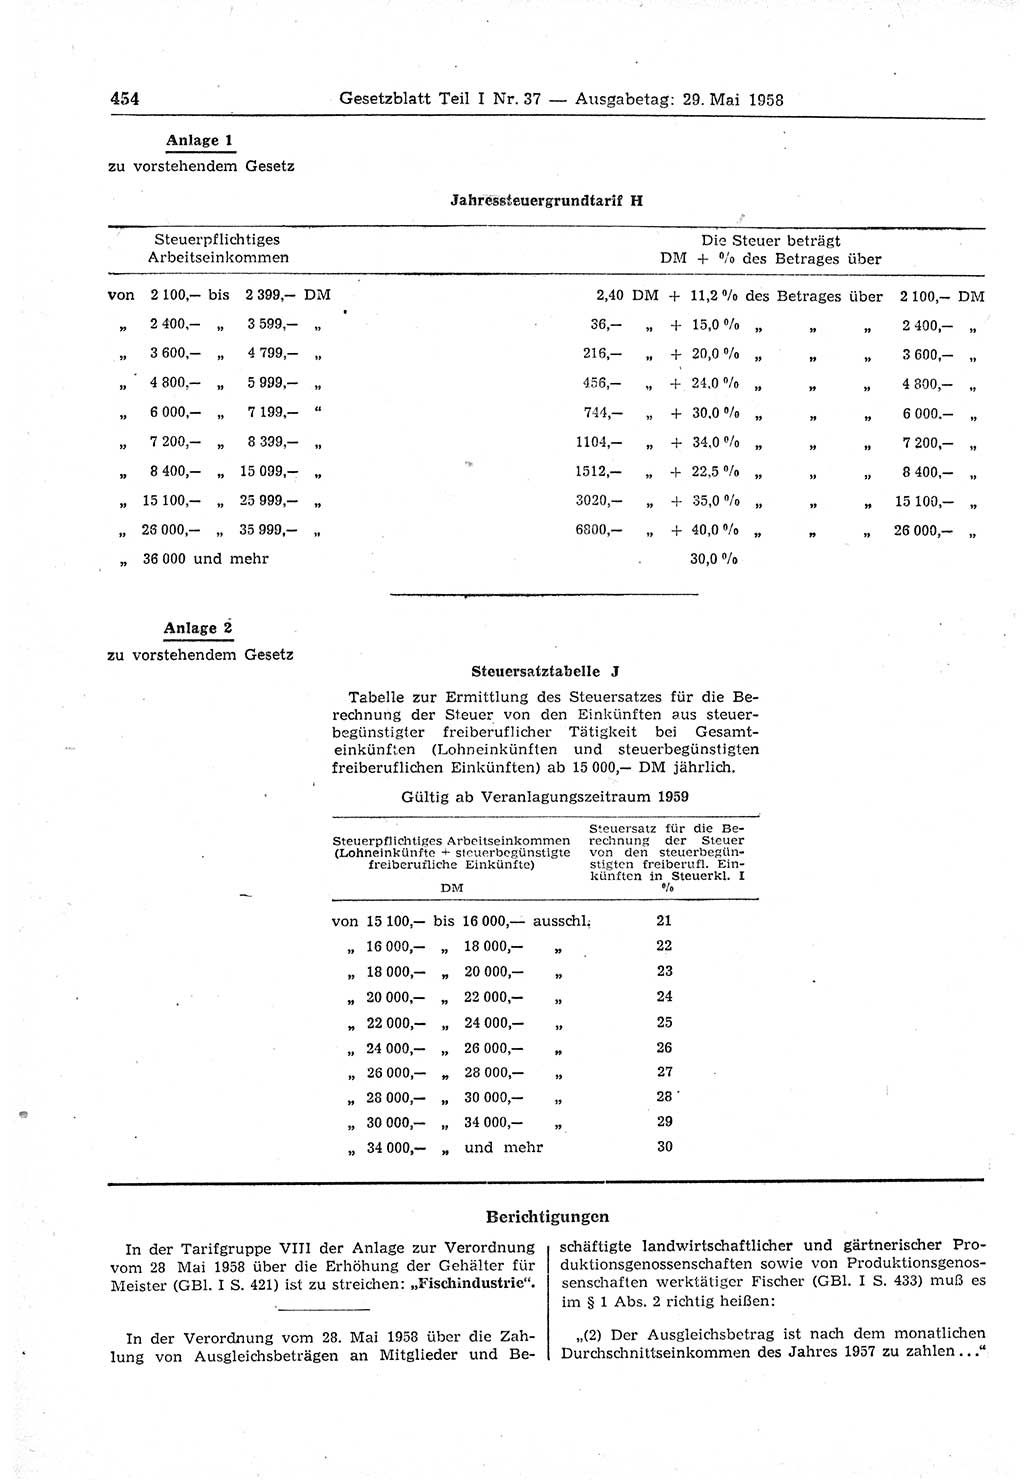 Gesetzblatt (GBl.) der Deutschen Demokratischen Republik (DDR) Teil Ⅰ 1958, Seite 454 (GBl. DDR Ⅰ 1958, S. 454)